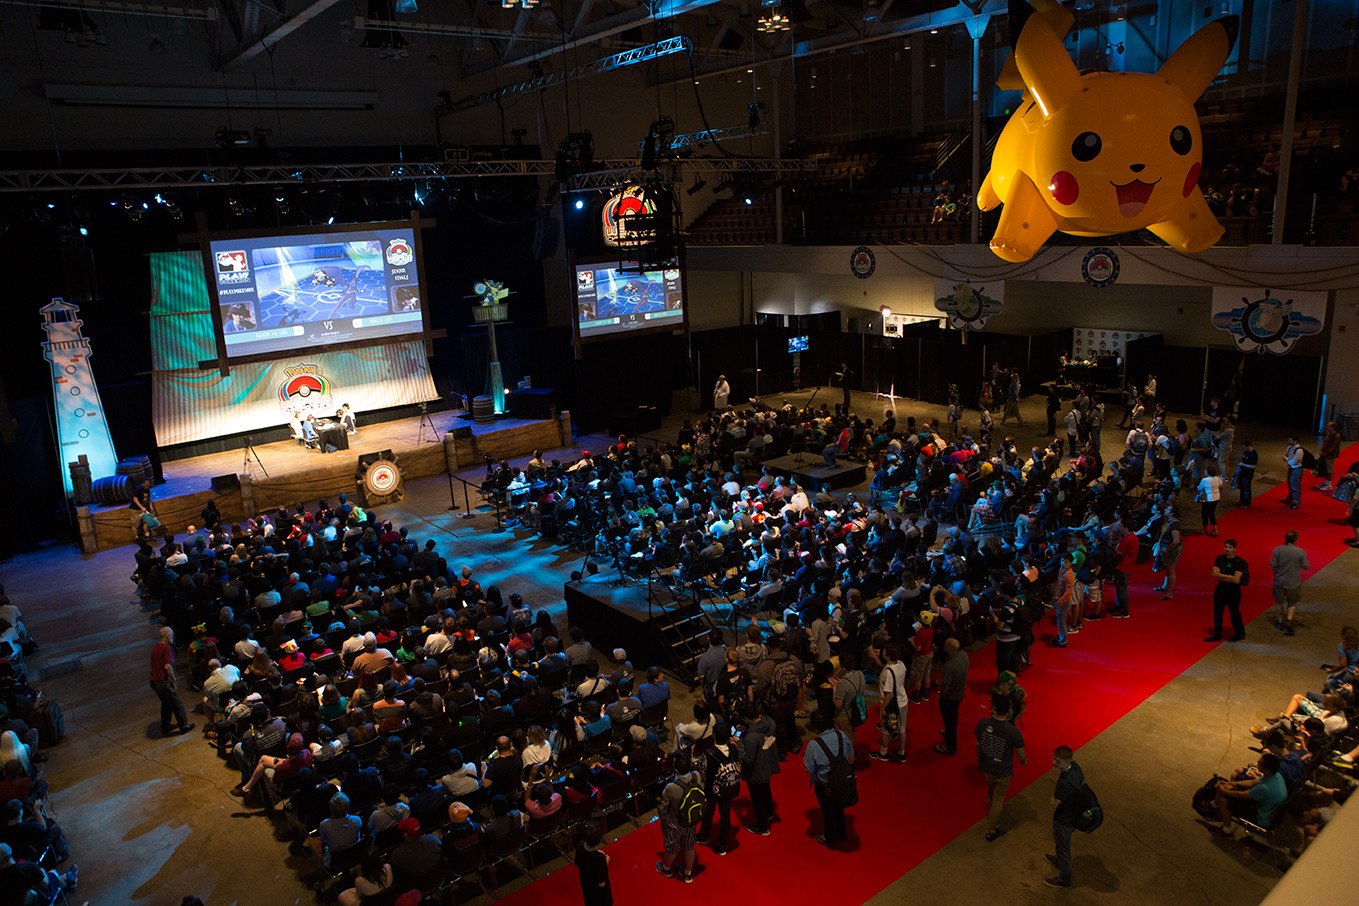 crowd-with-pikachu